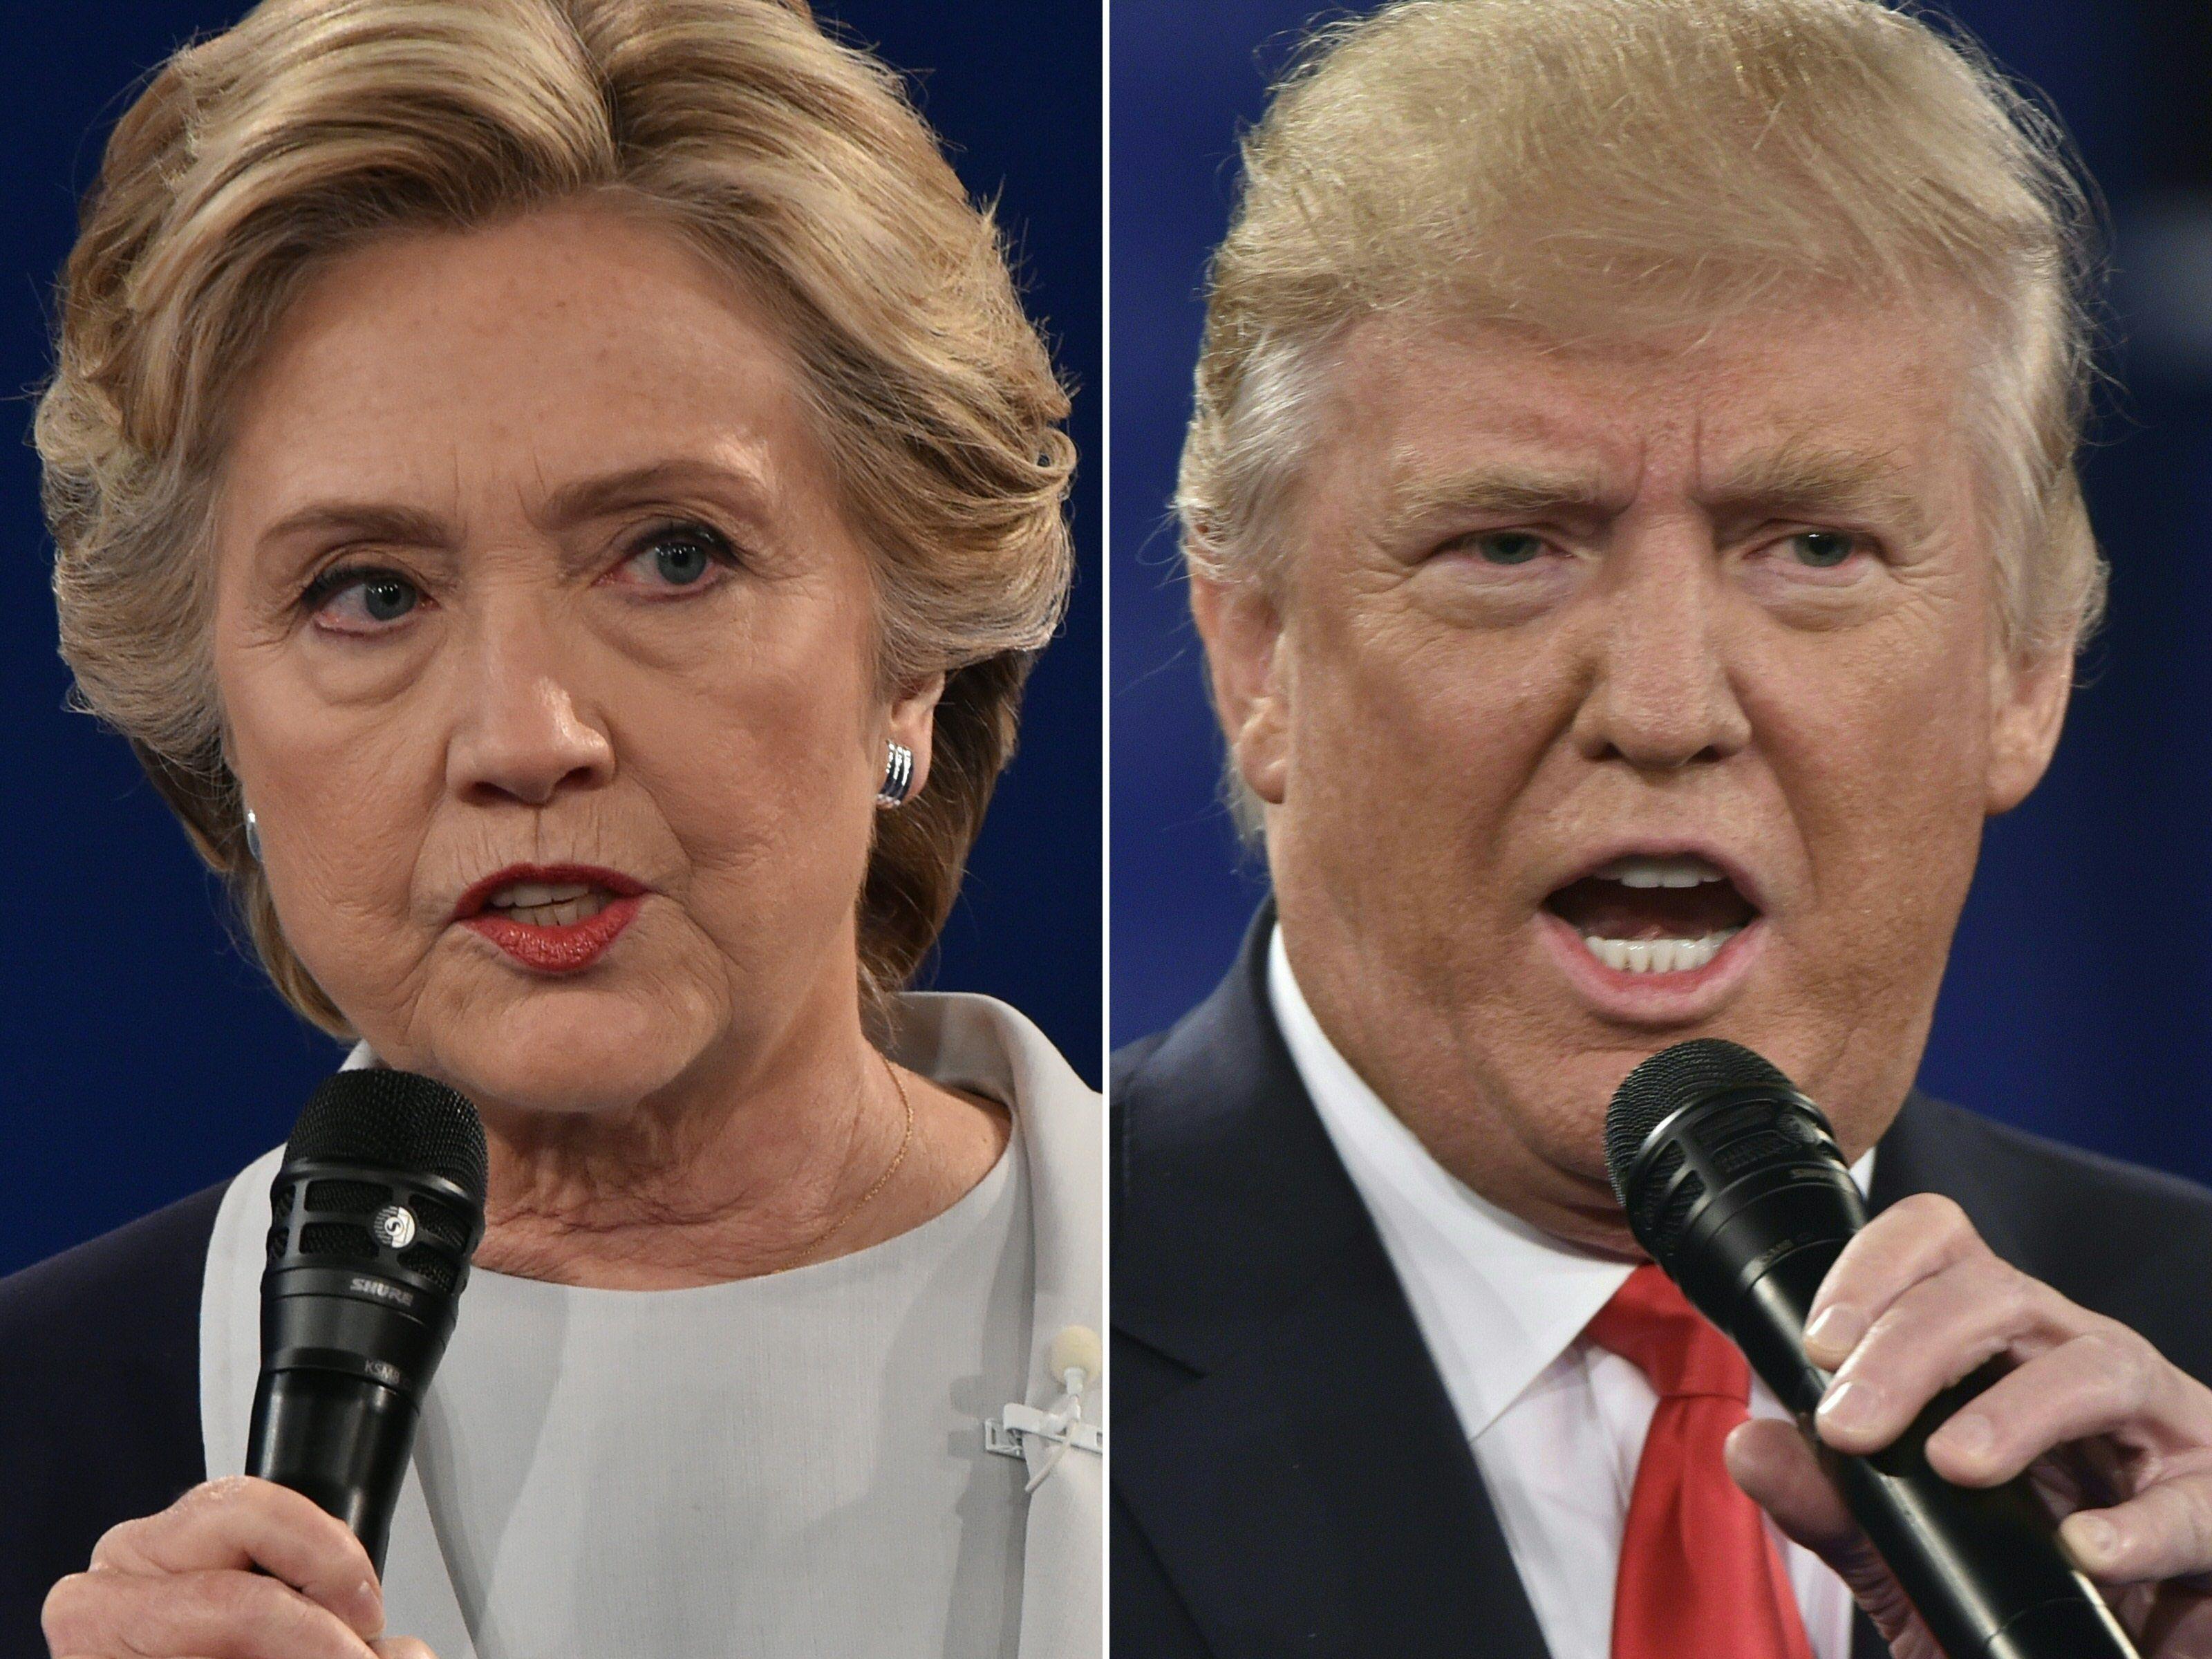 Am Dienstag kommt es zum Showdown zwischen Hillary Clinton und Donald Trump.